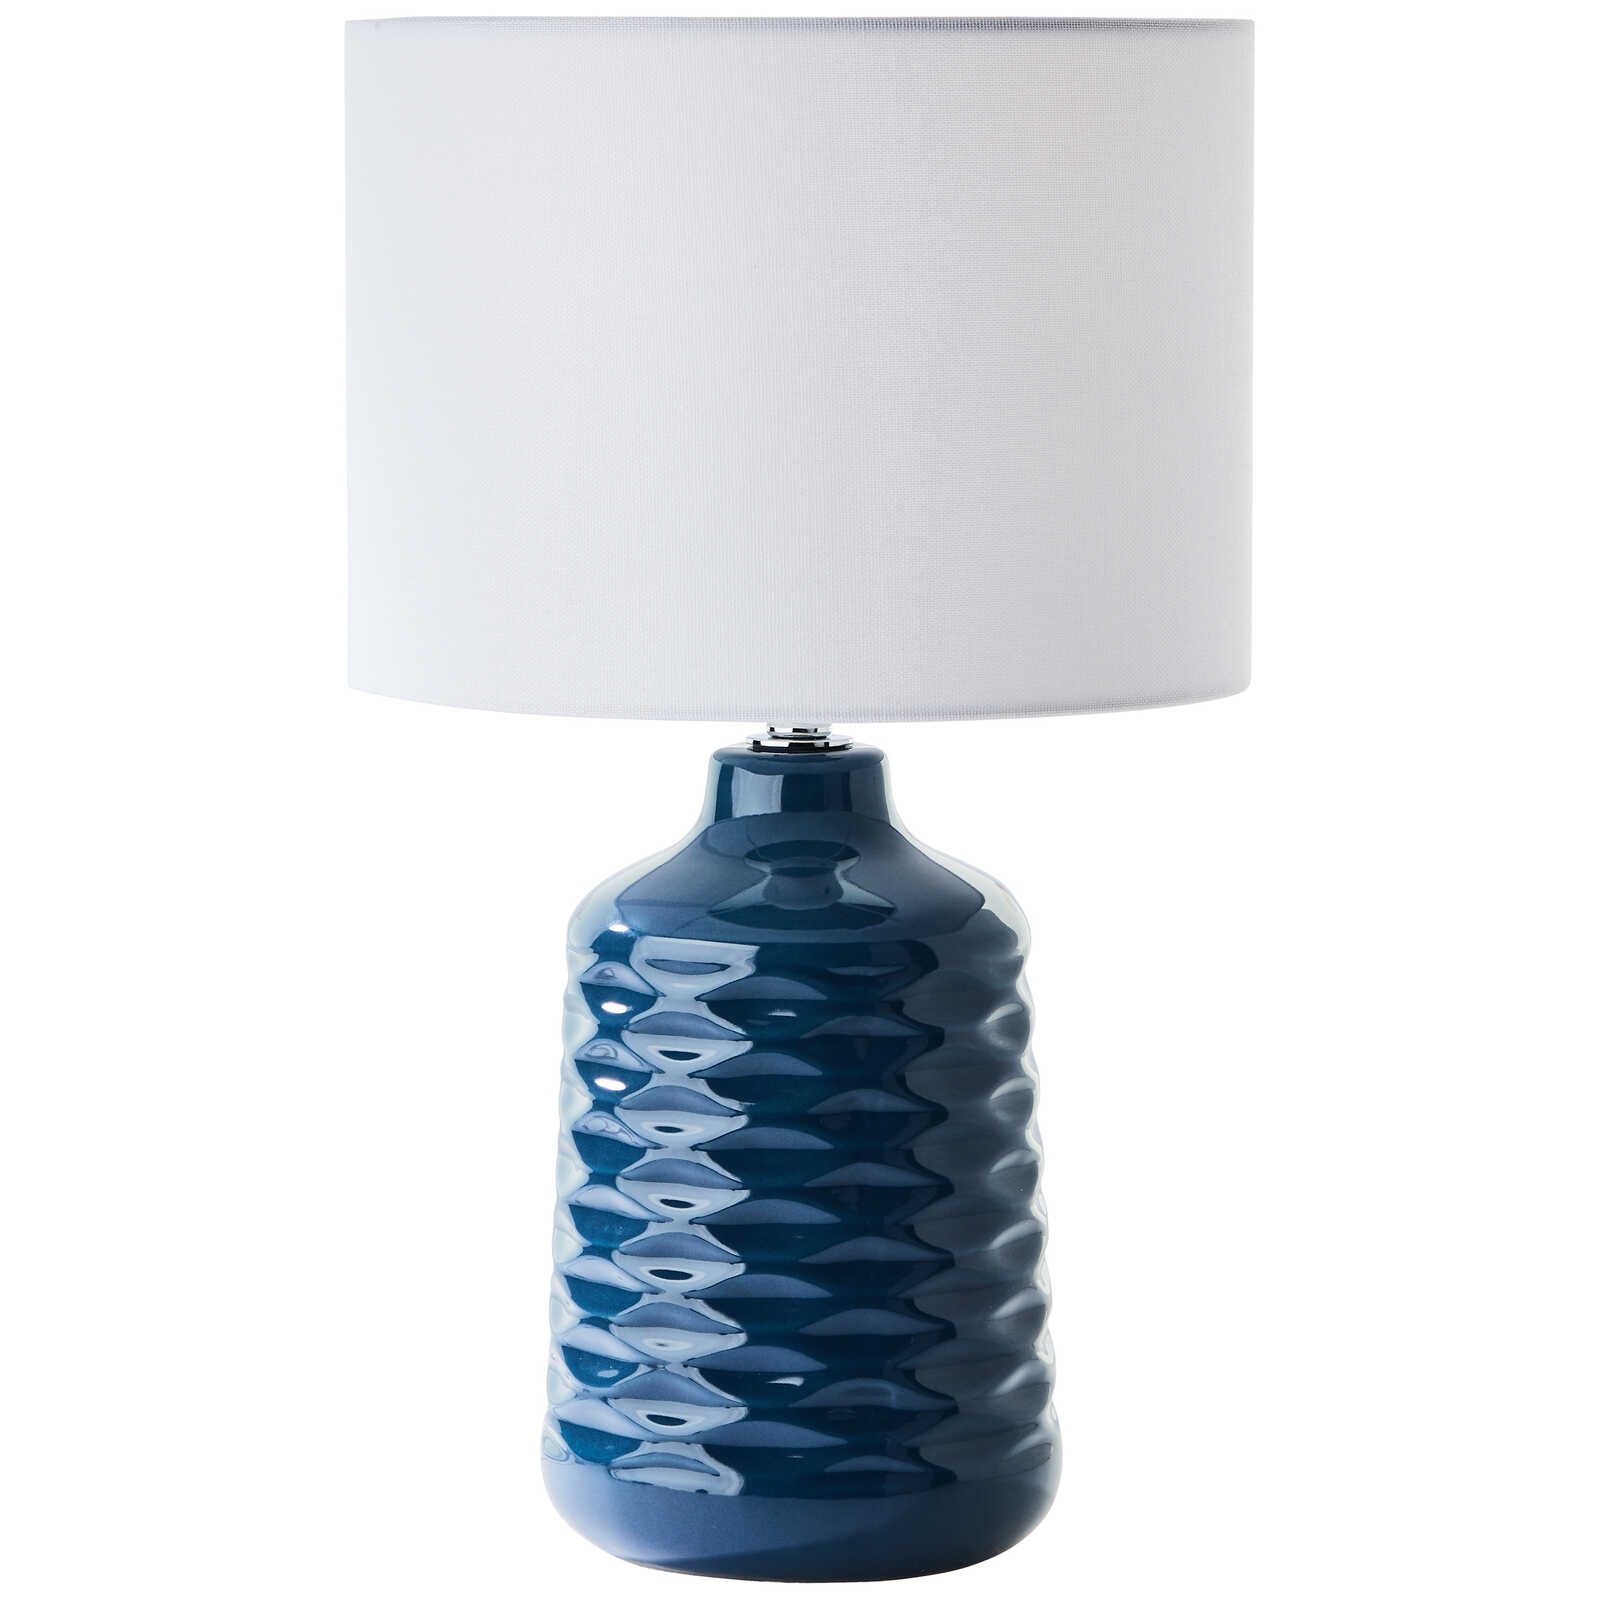             Tafellamp van textiel - Jasper 2 - Blauw
        